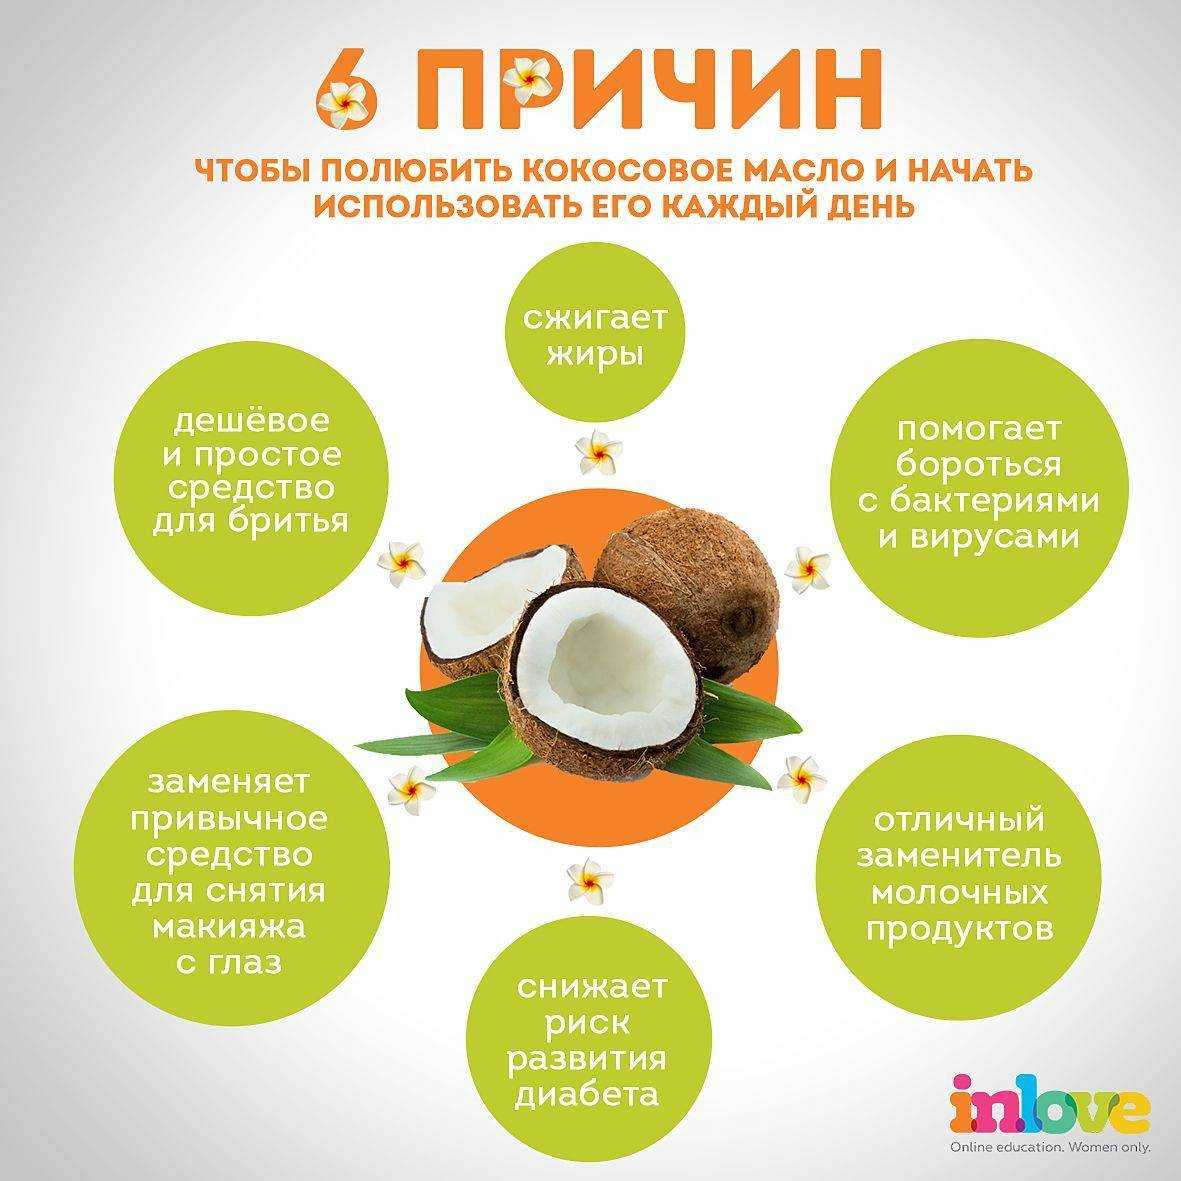 Какие витамины содержатся в кокосе, сколько кбжу, и химический состав стружки, воды, сахара, ги, польза, вред, противопоказания